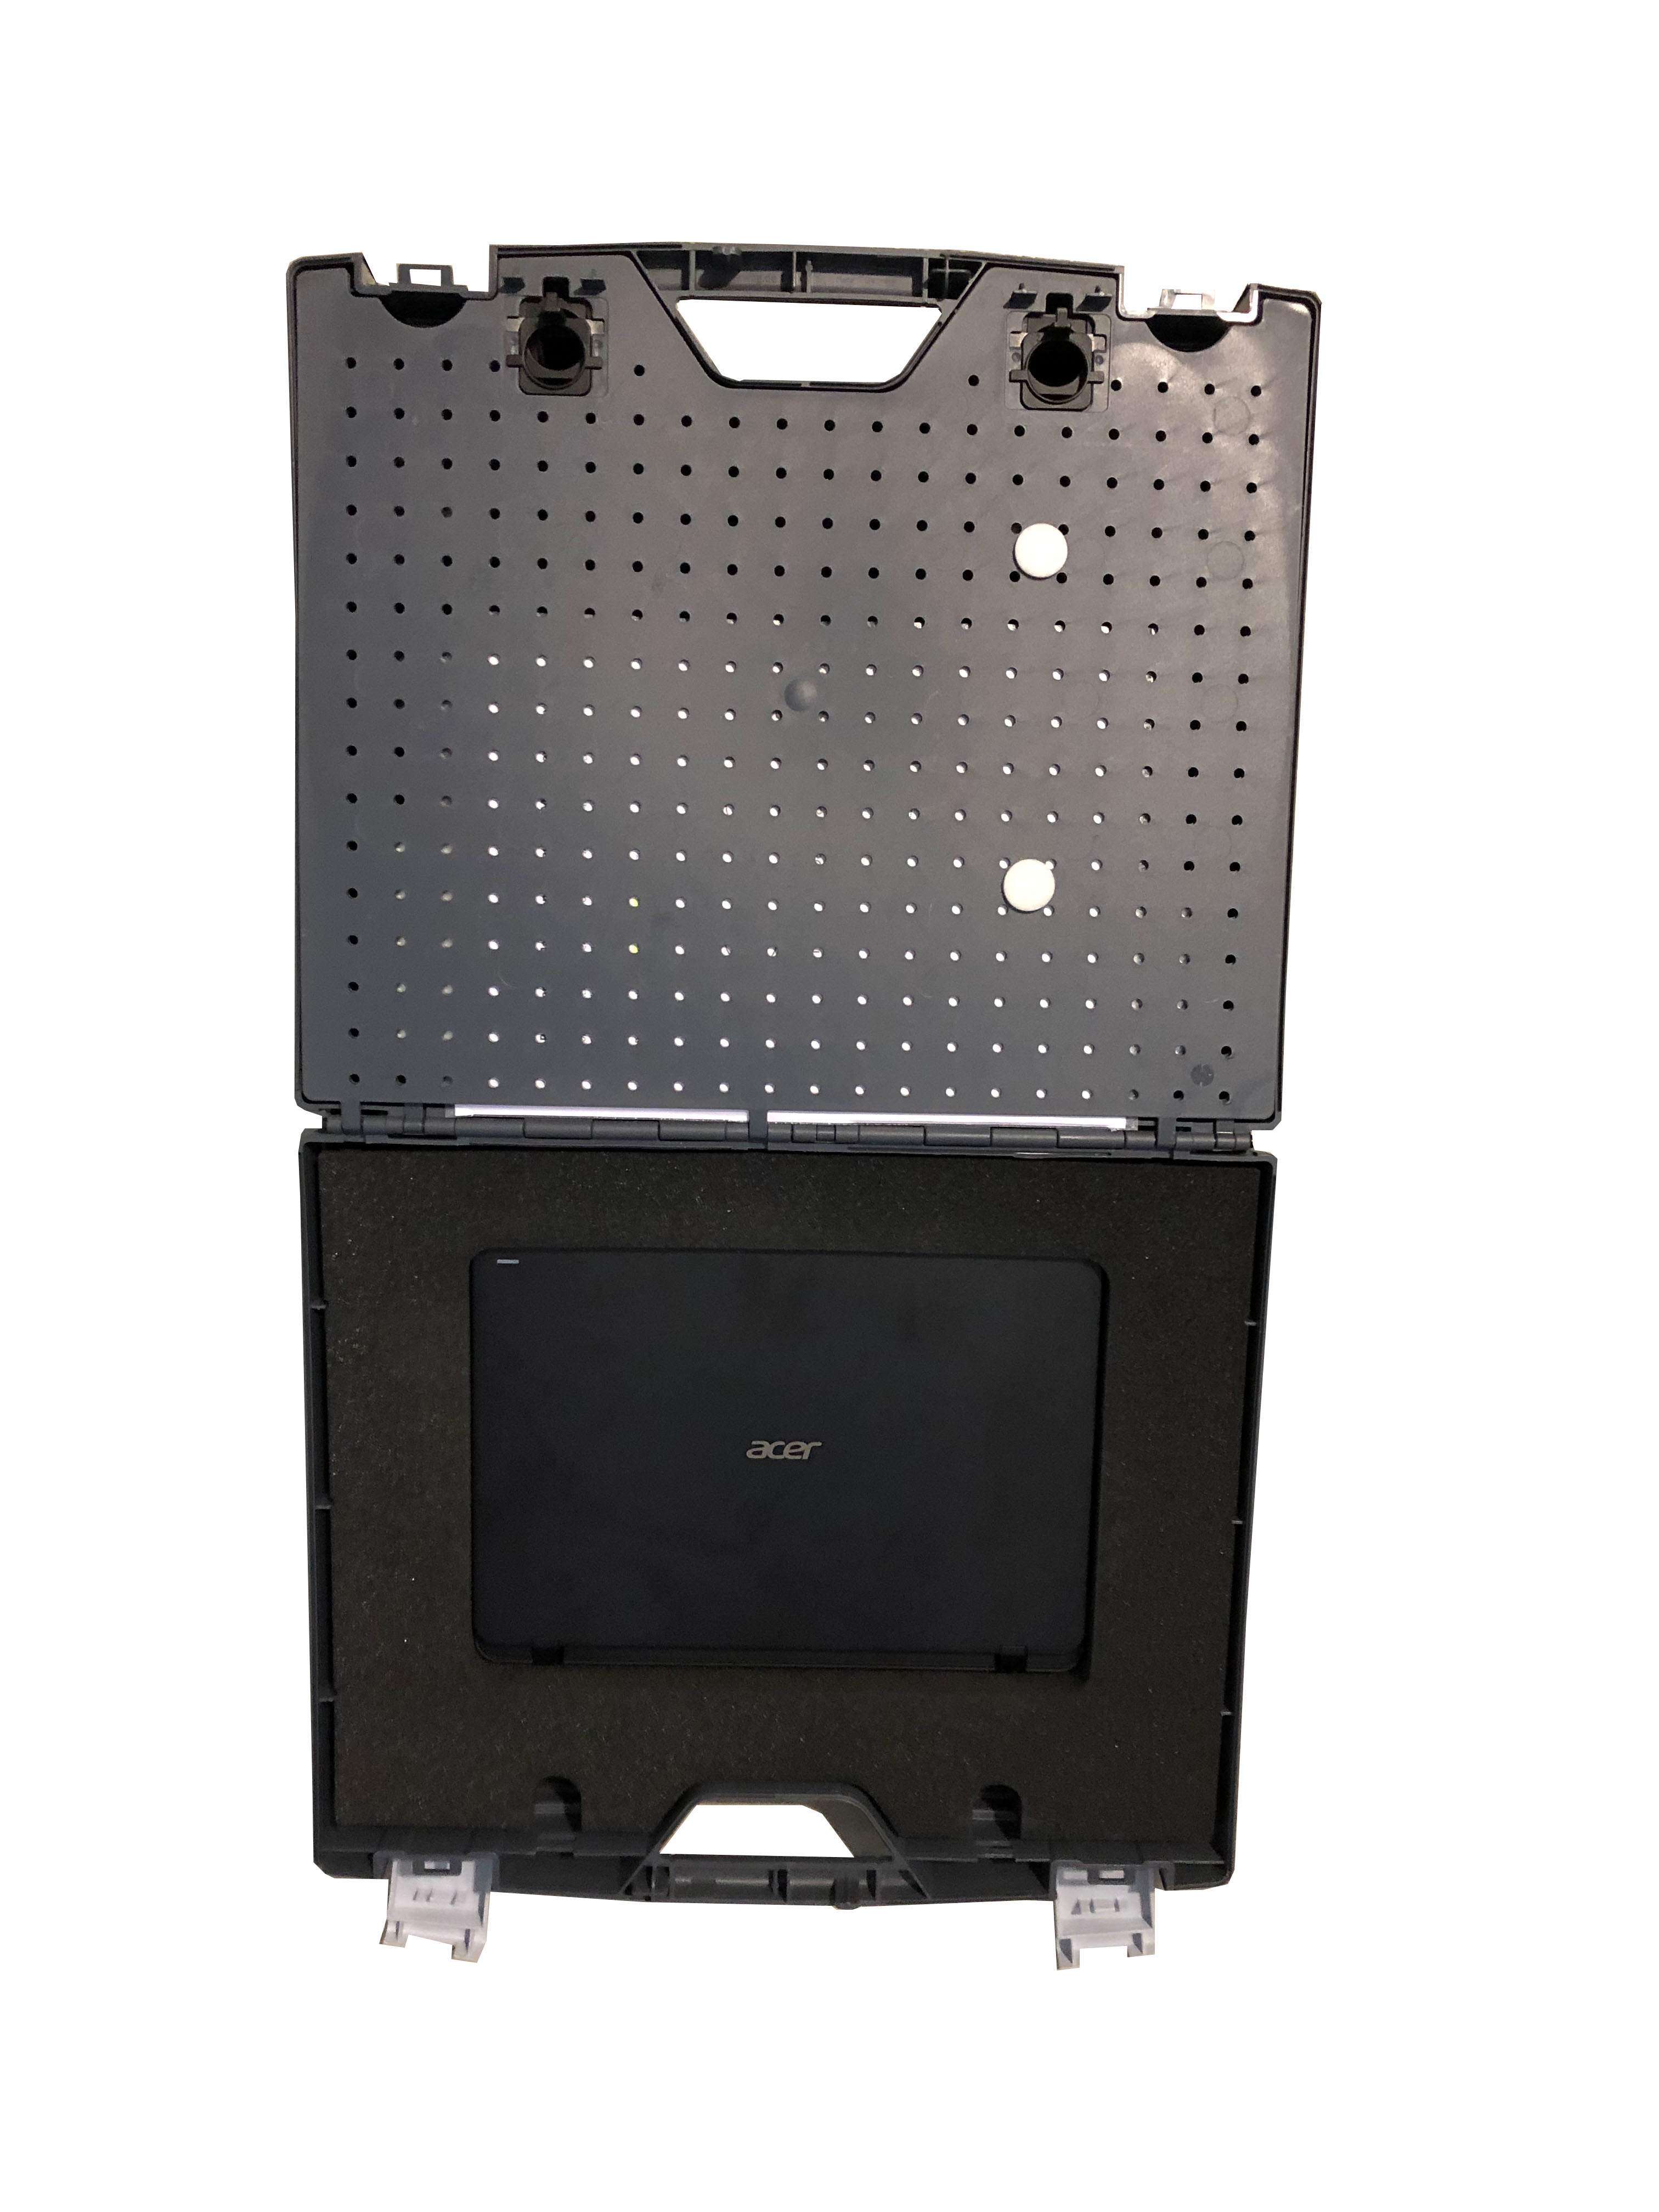 SDM 4000 RS-4 Sistem de măsurare a barelor de legătură fără fir